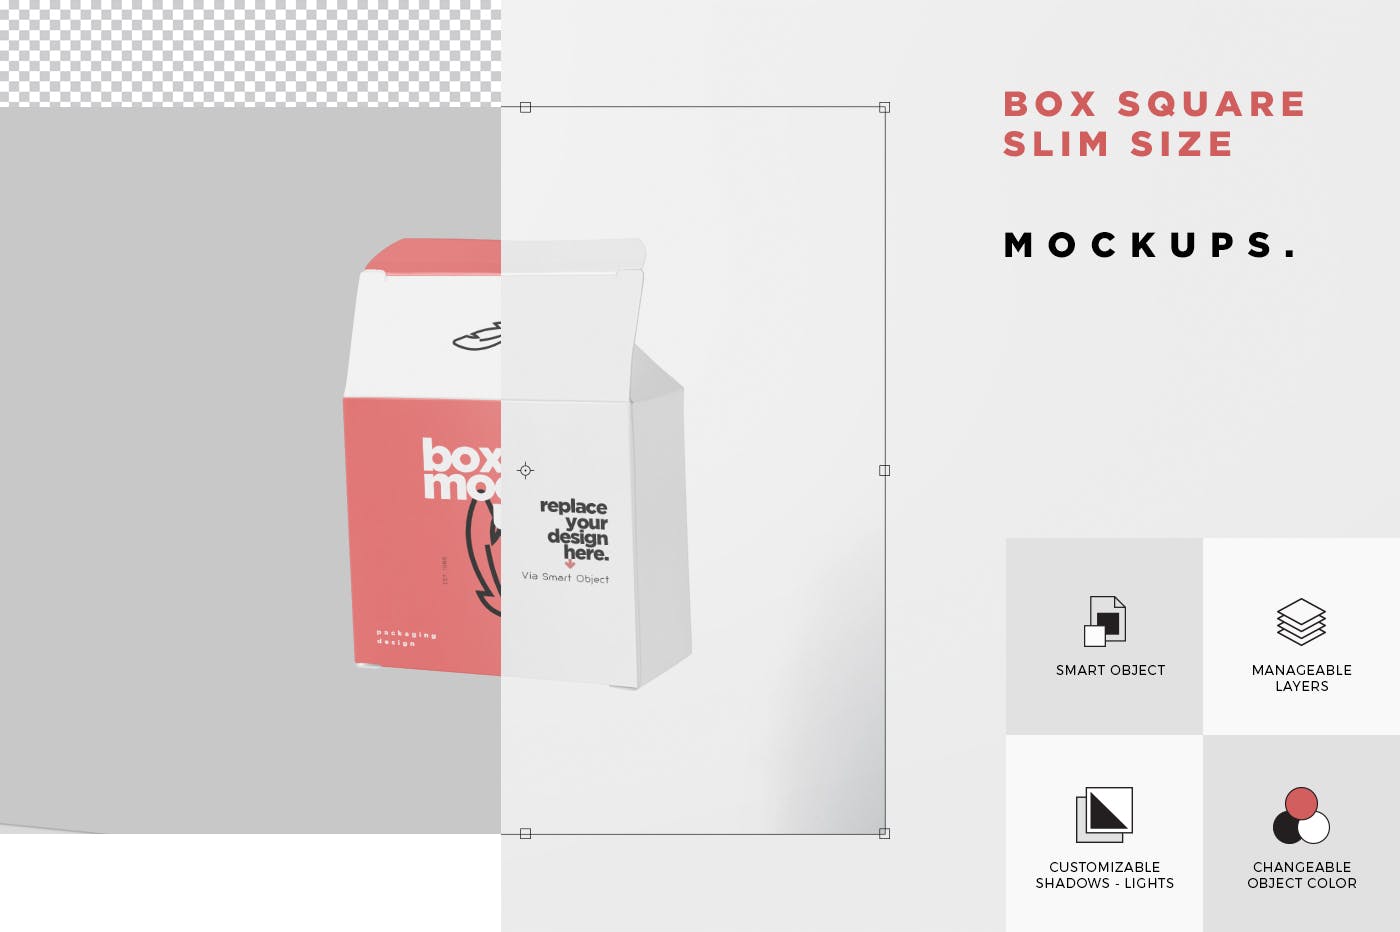 扁平方形包装盒外观设计效果图素材库精选 Box Mockup – Square Slim Size插图(6)